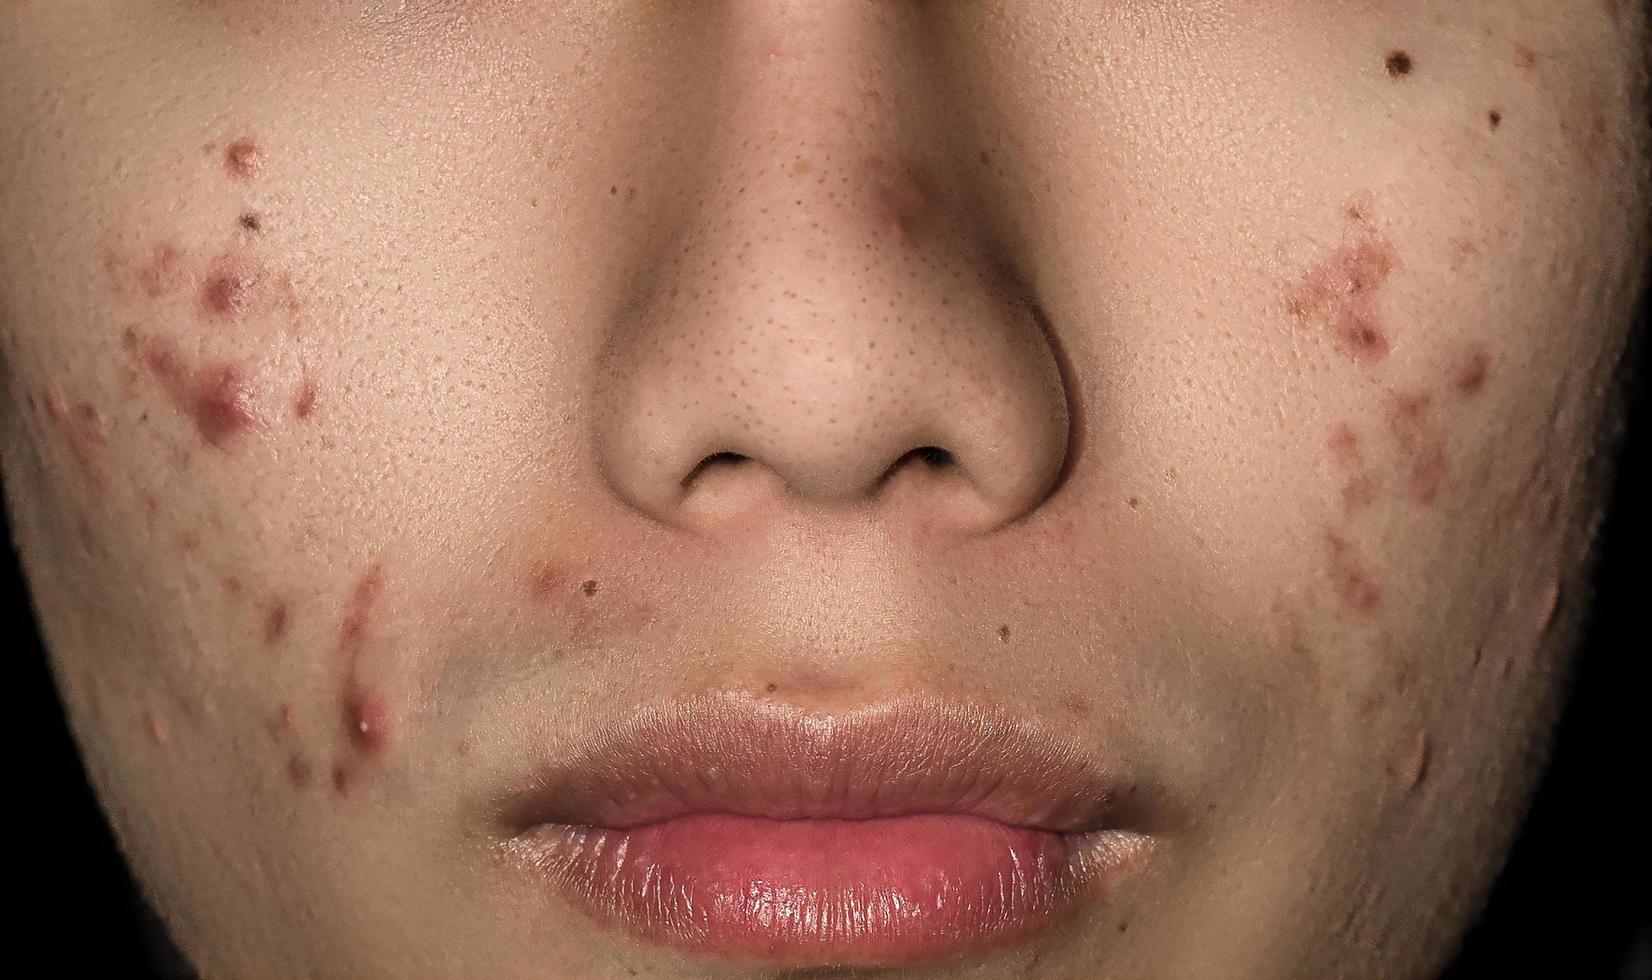 närbild av akne på huden, akne i ansiktet orsakat av hormon. foto